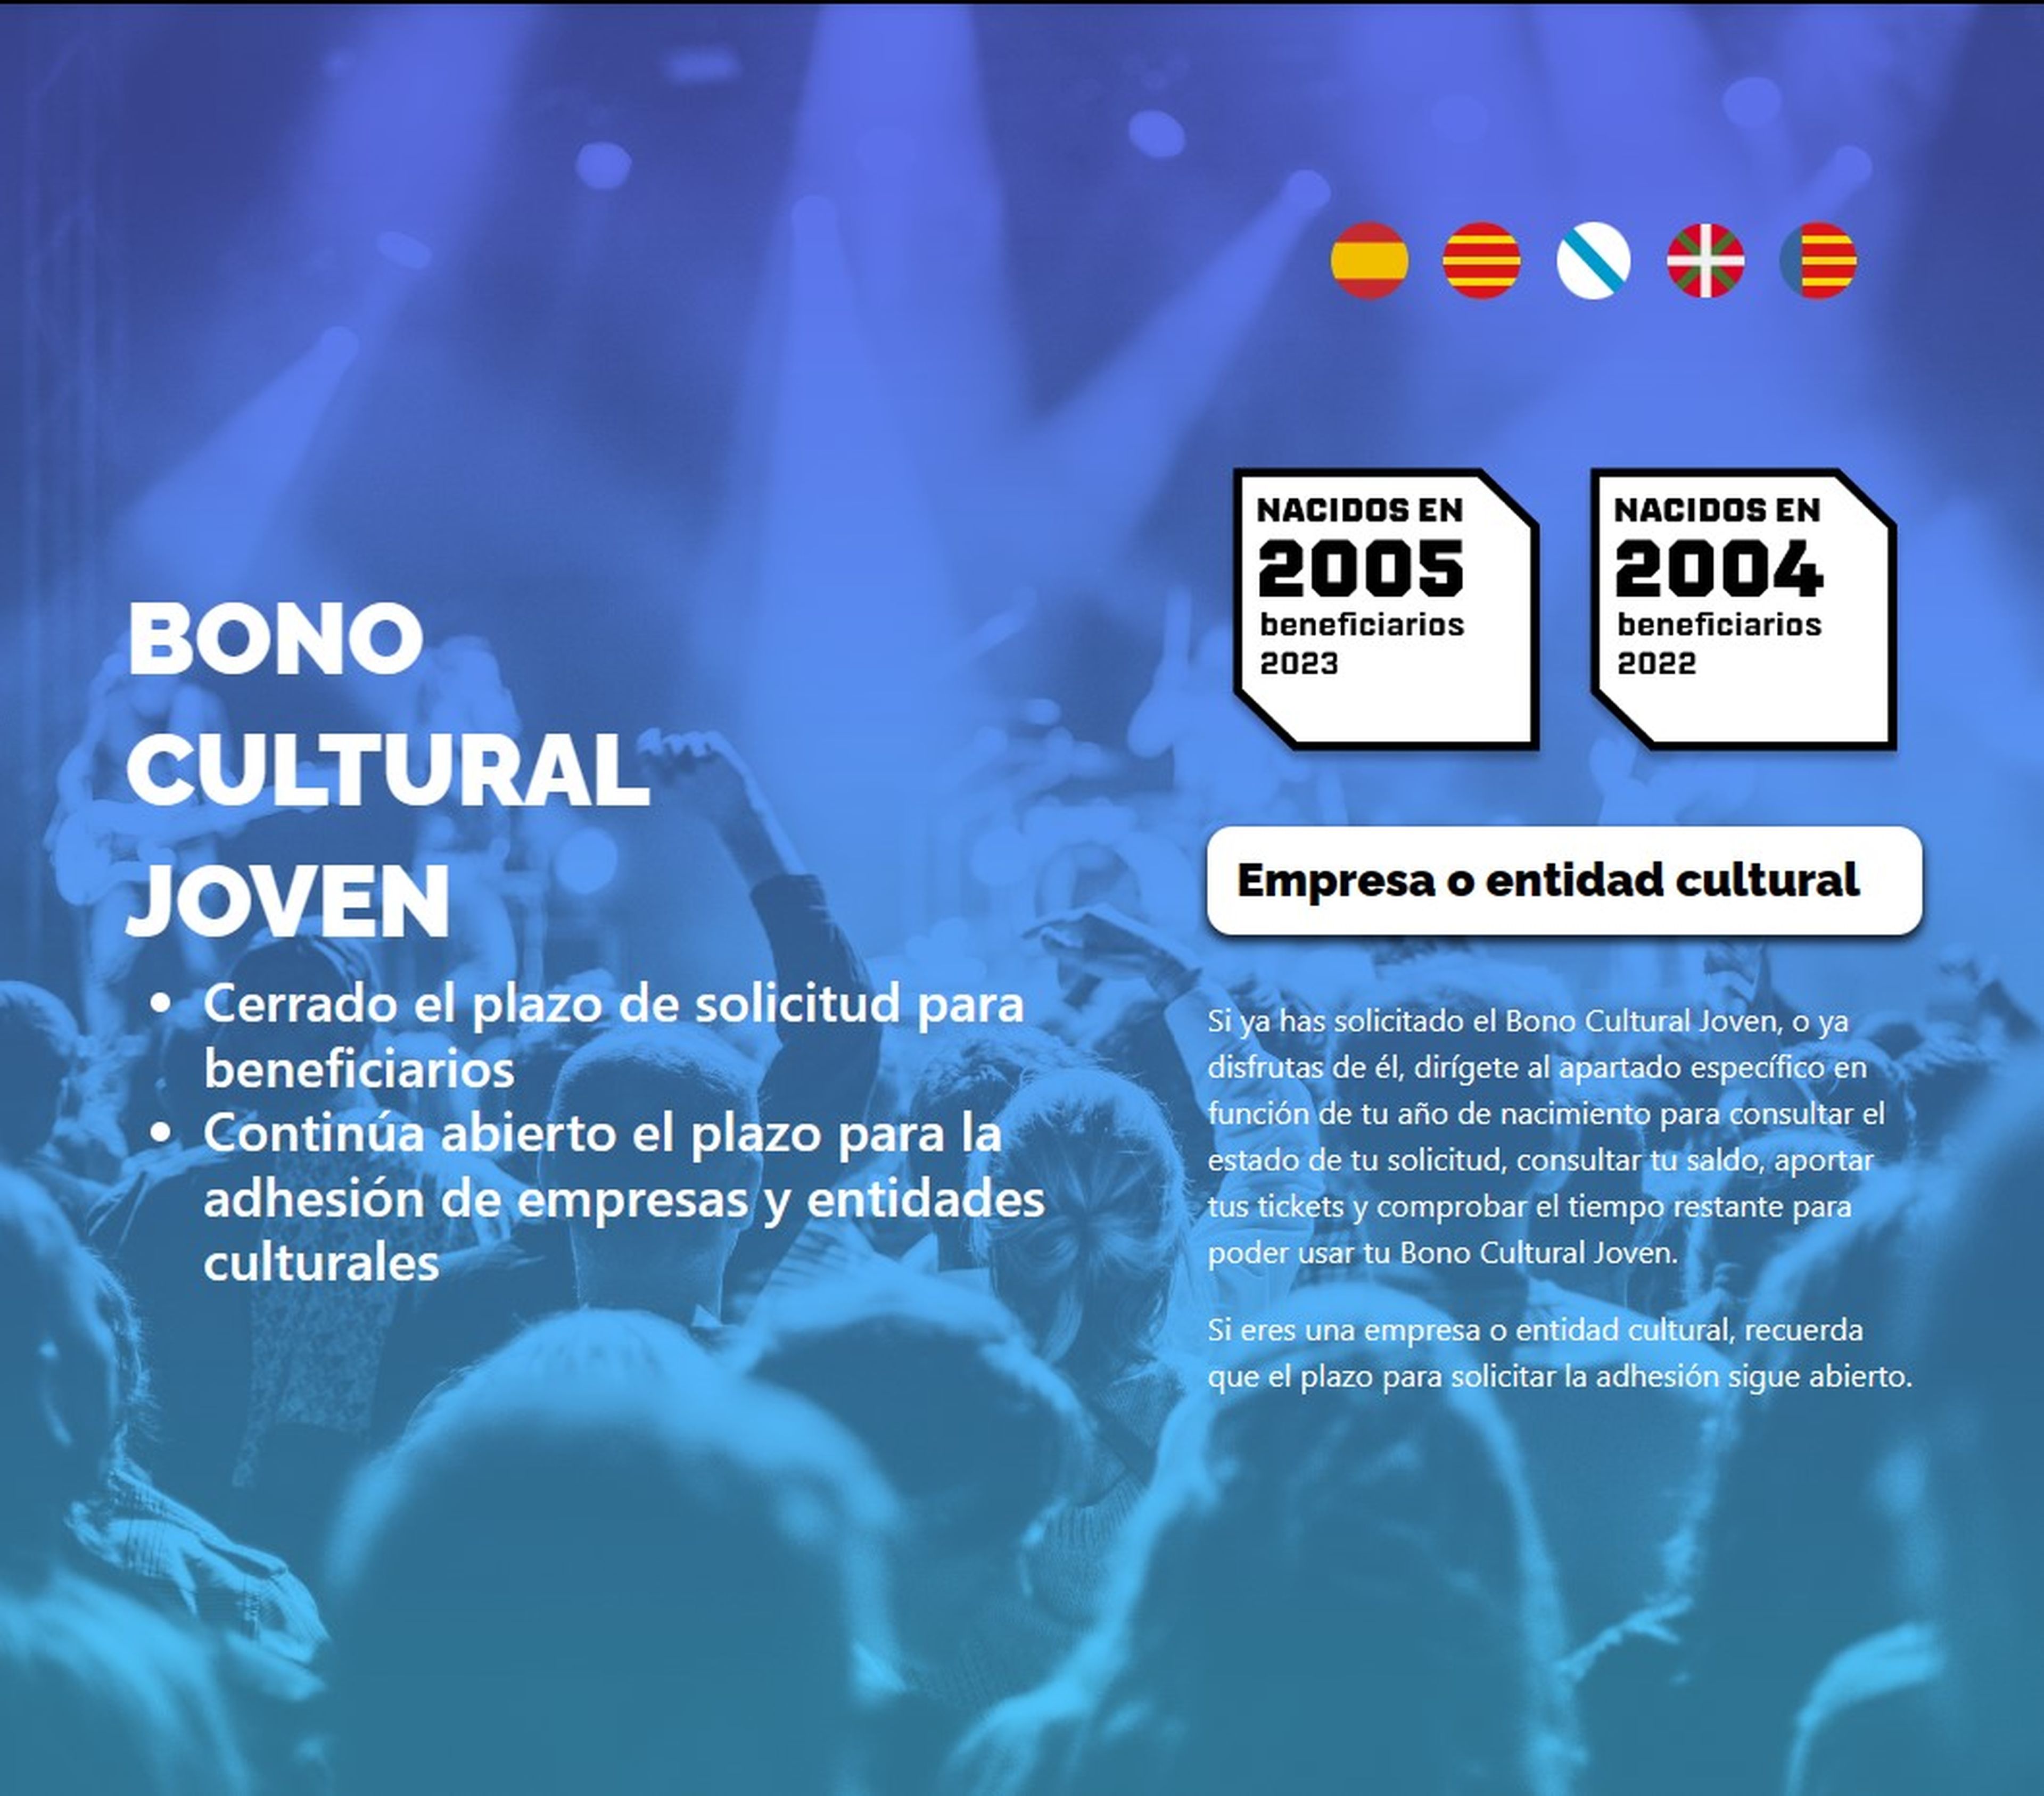 Bono Cultural Joven 2023. ¿Qué es y en qué puede gastarse?